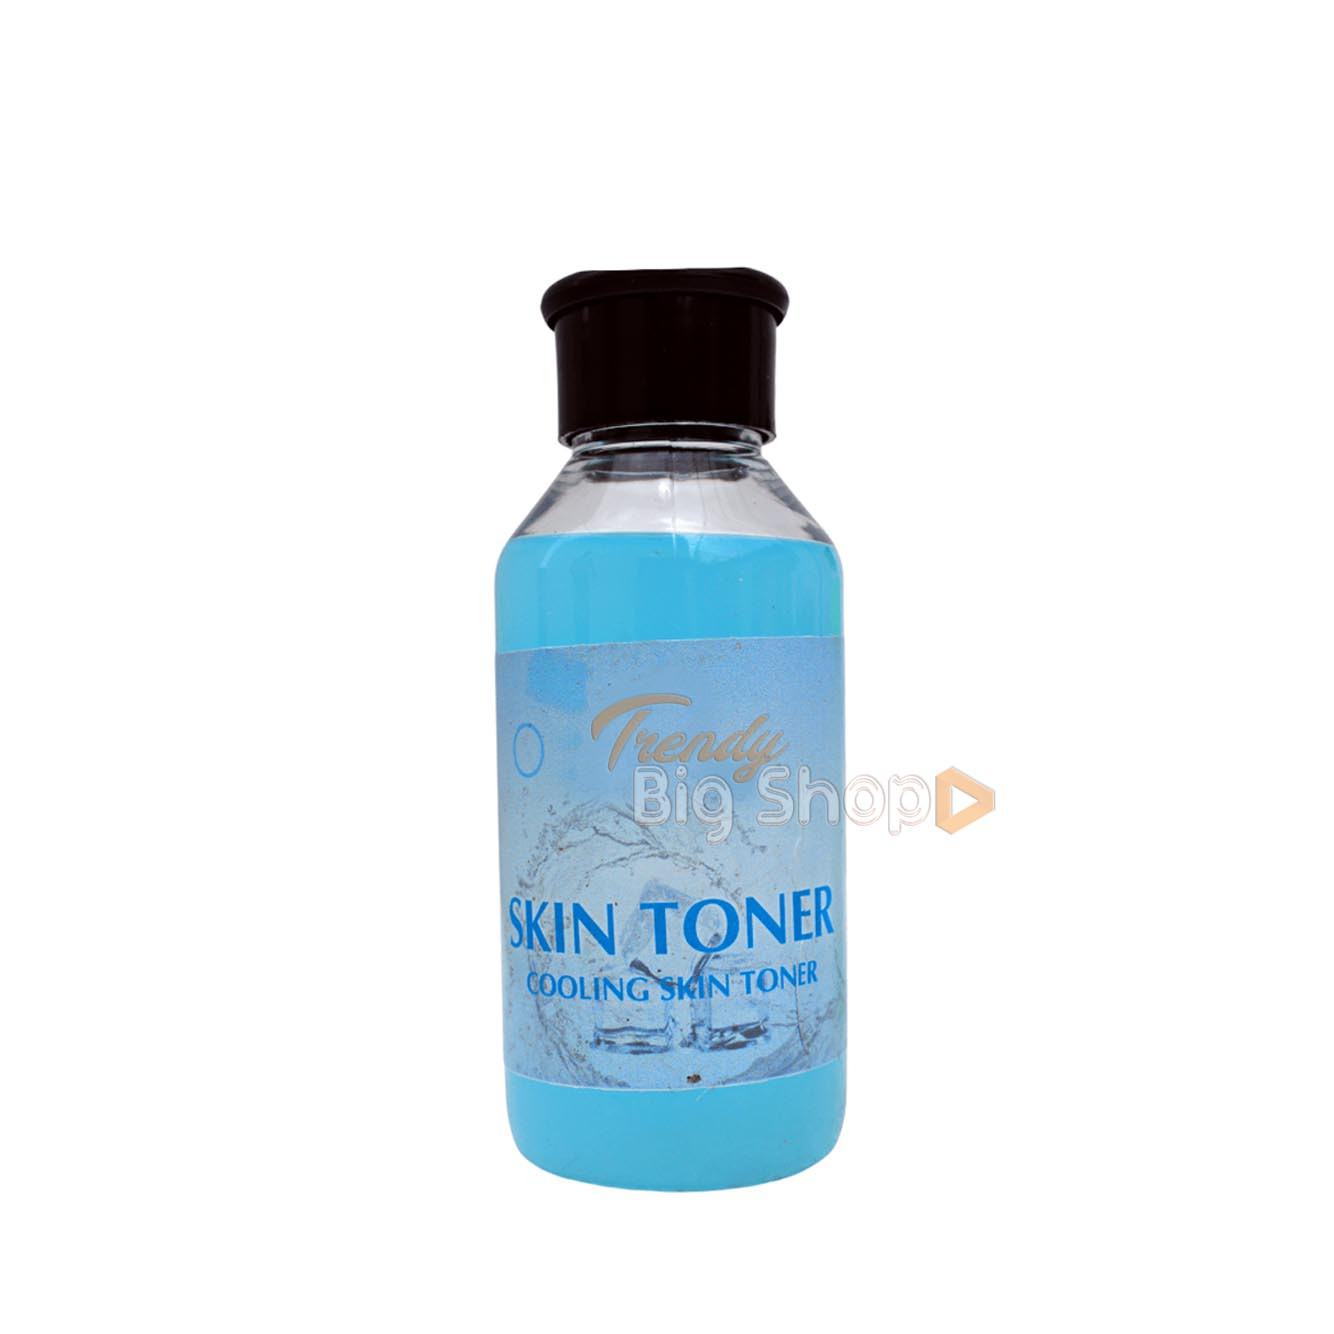 Herbal Skin Toner, 250ml Cool Skin Toner in online kodai